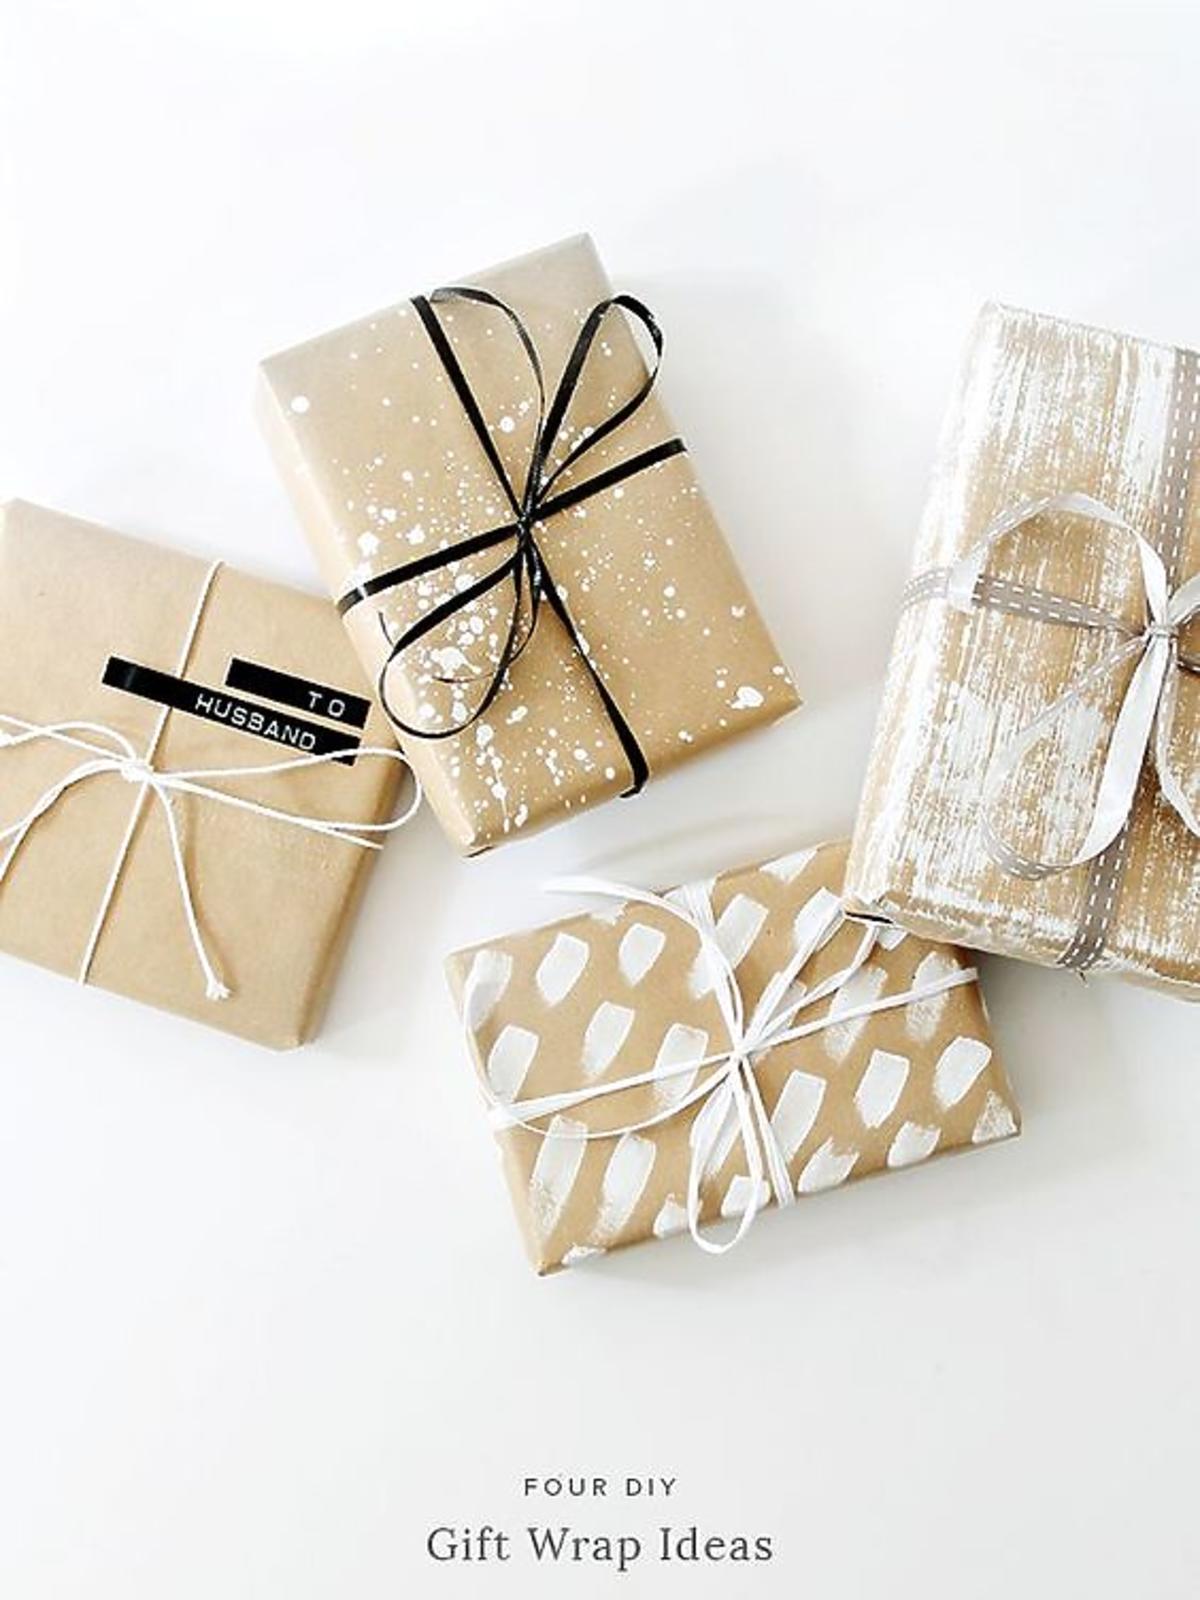 Jak pomysłowo zapakować prezent?